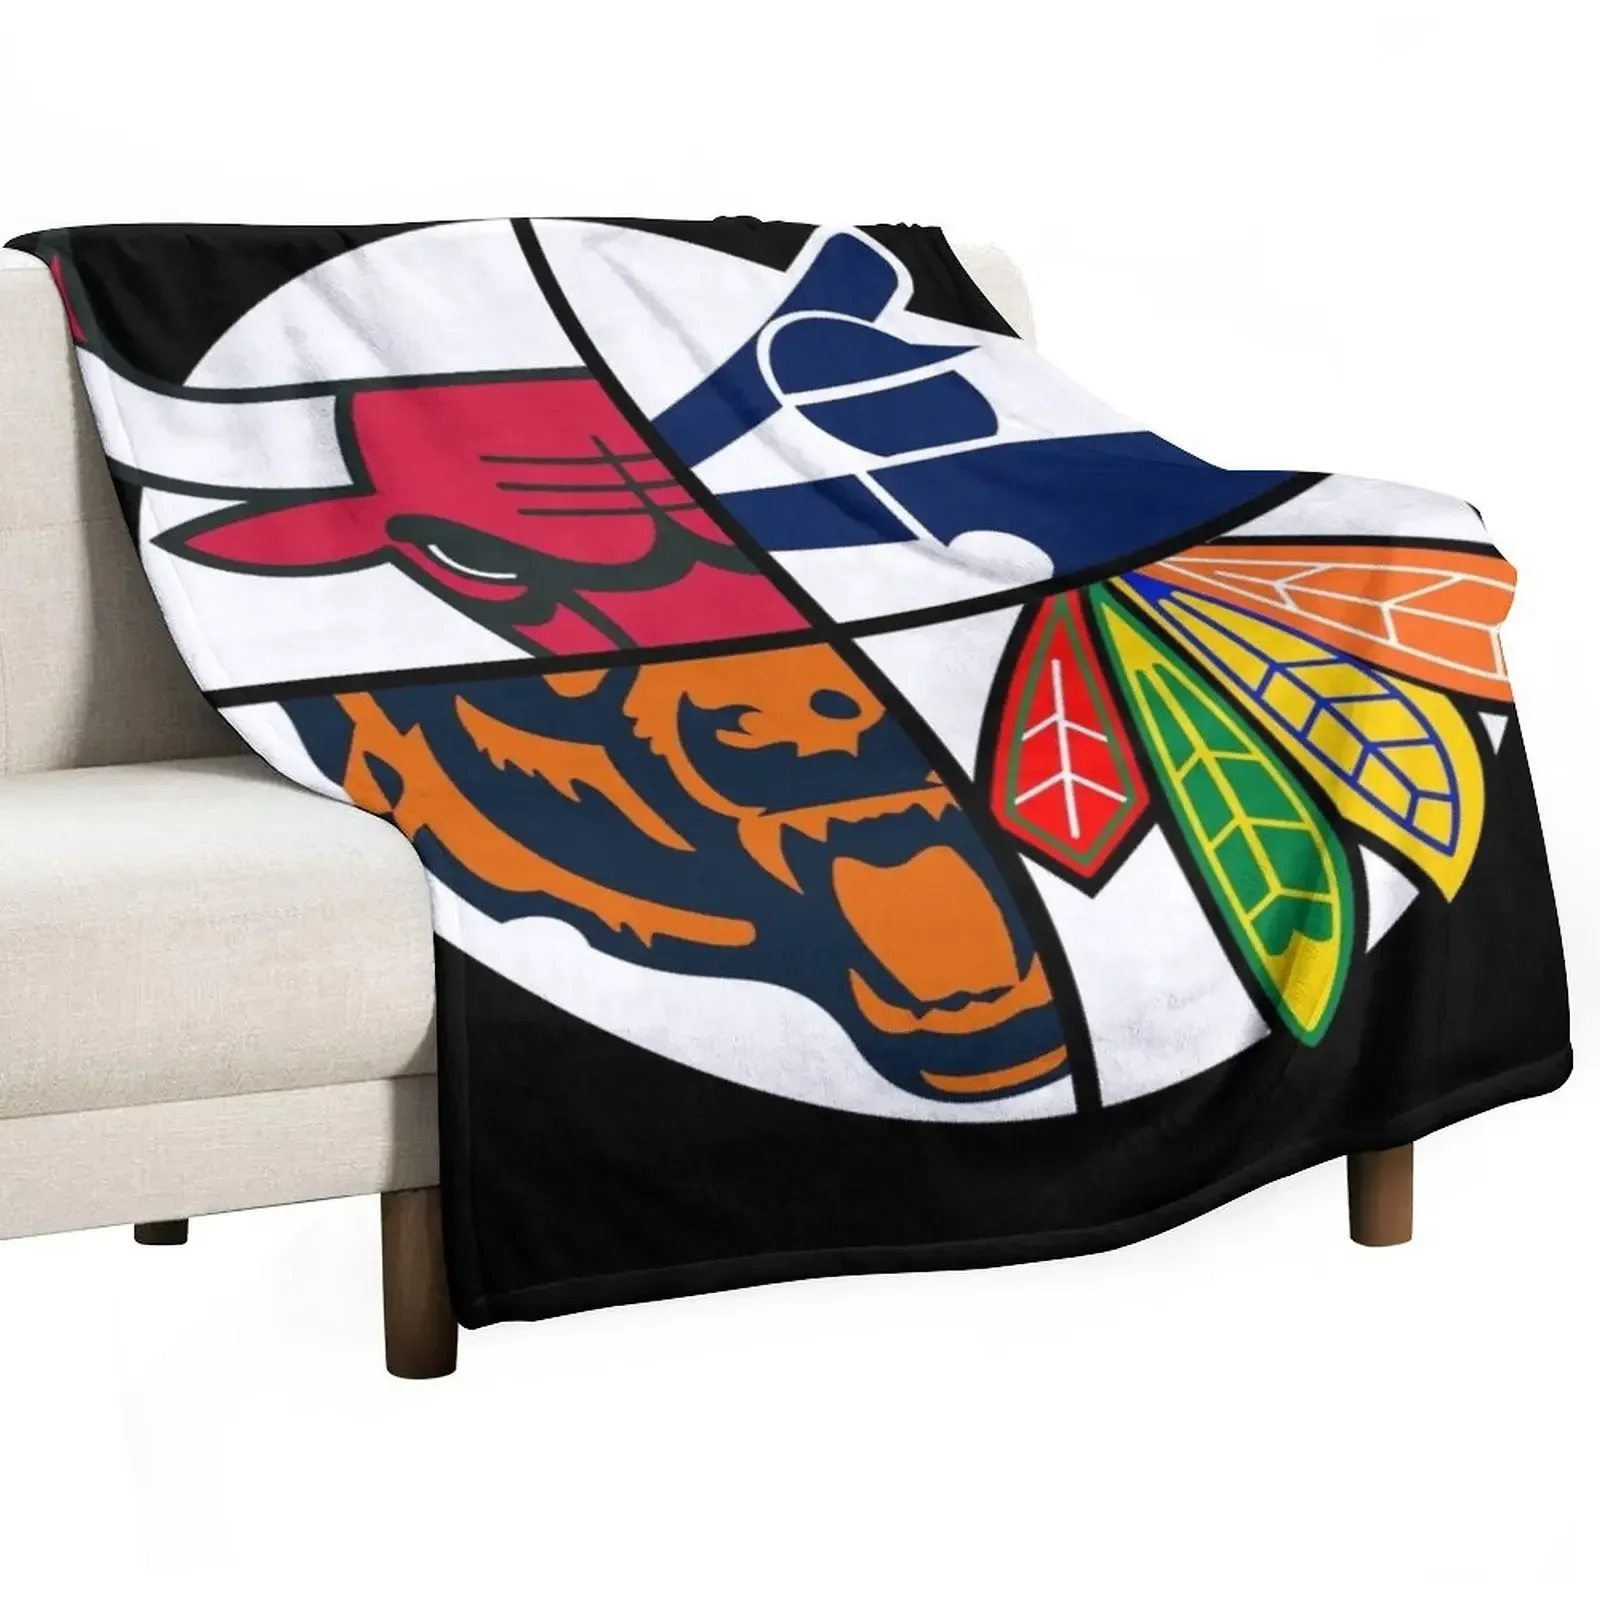 

Спортивное одеяло Чикаго саутсайд, одеяла для кровати, дивана, тонкие одеяла